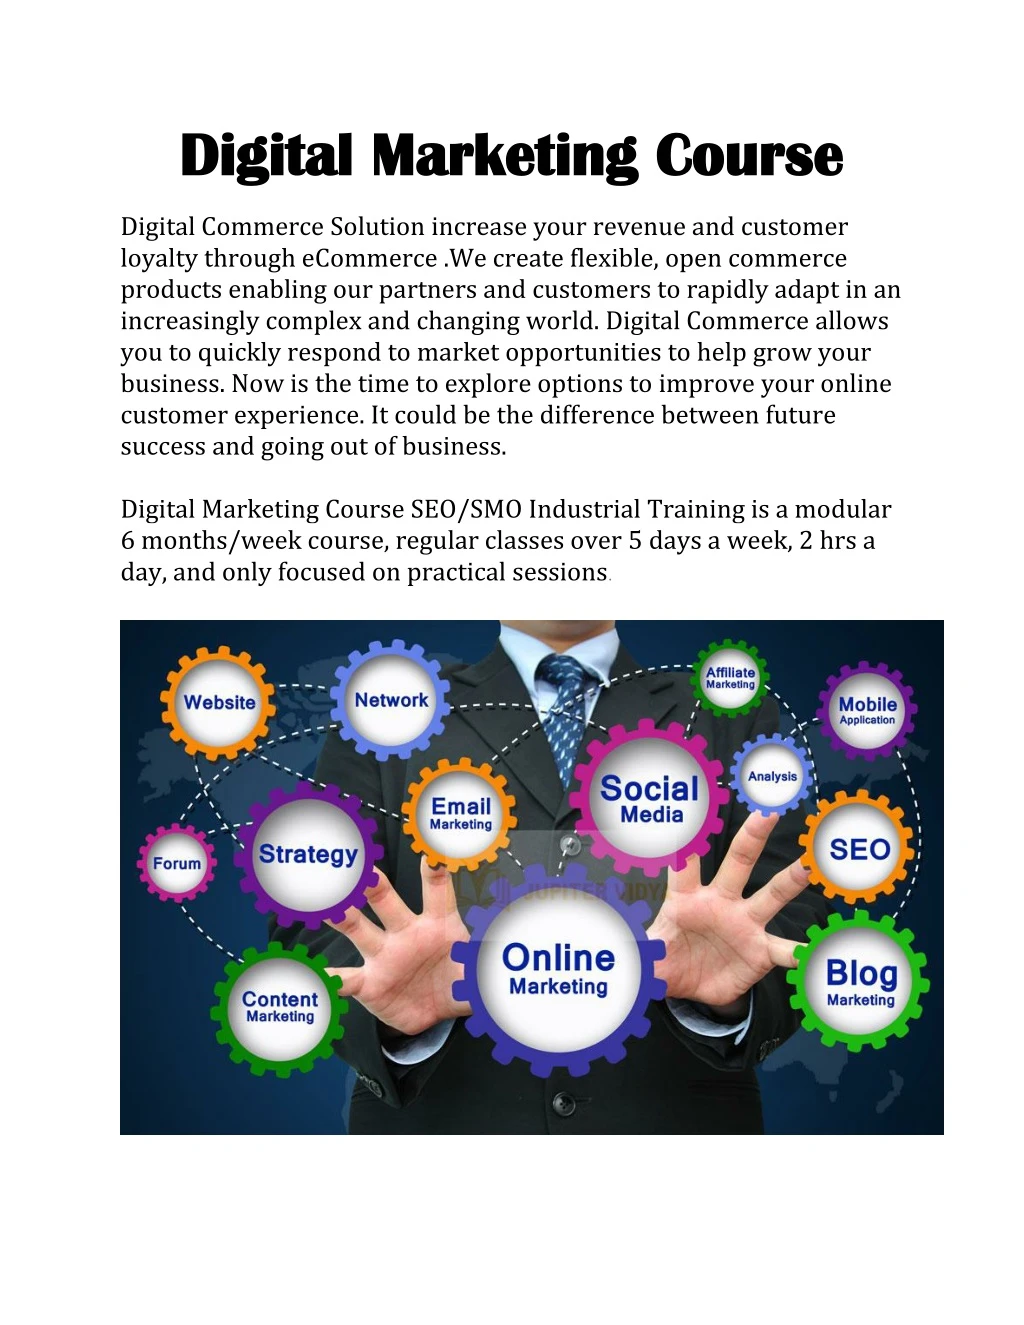 digital marketing course digital marketing course